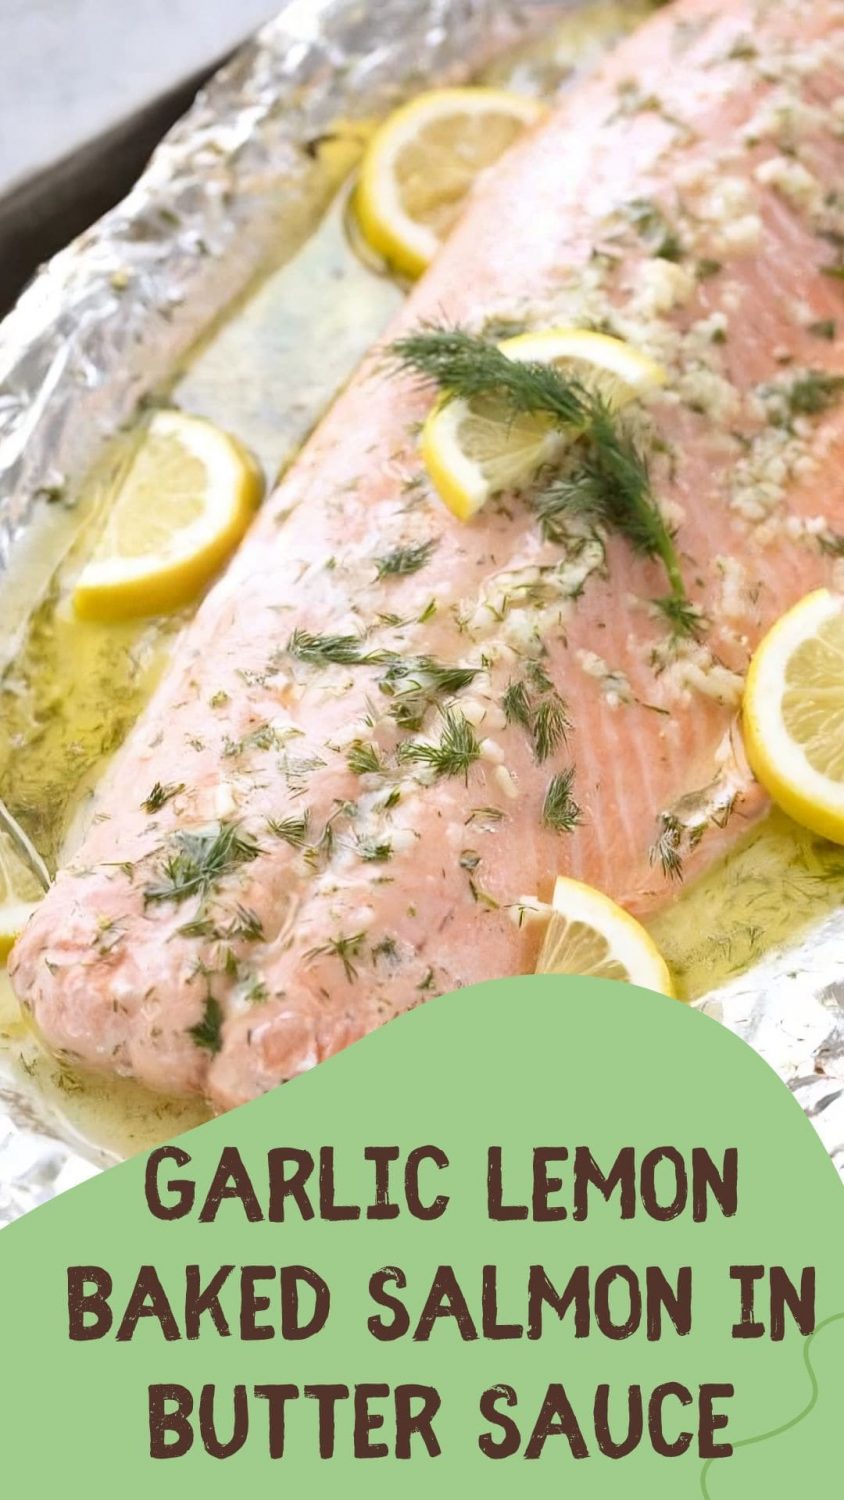 Garlic Lemon Baked Salmon in Butter Sauce